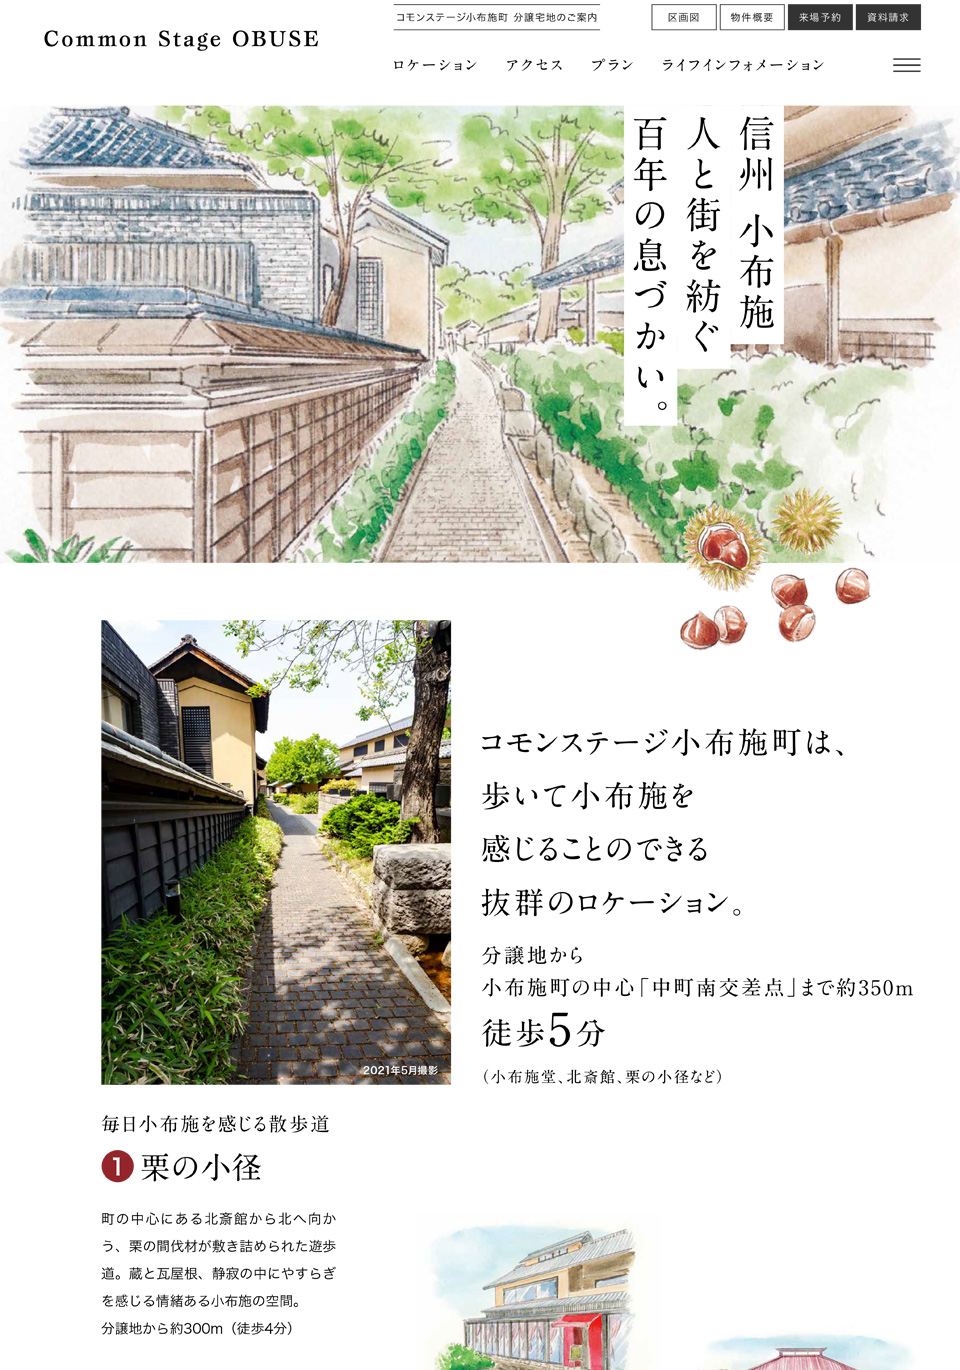 積水ハウス株式会社長野支店 コモンステージ小布施町分譲地ランディングページ（2021）